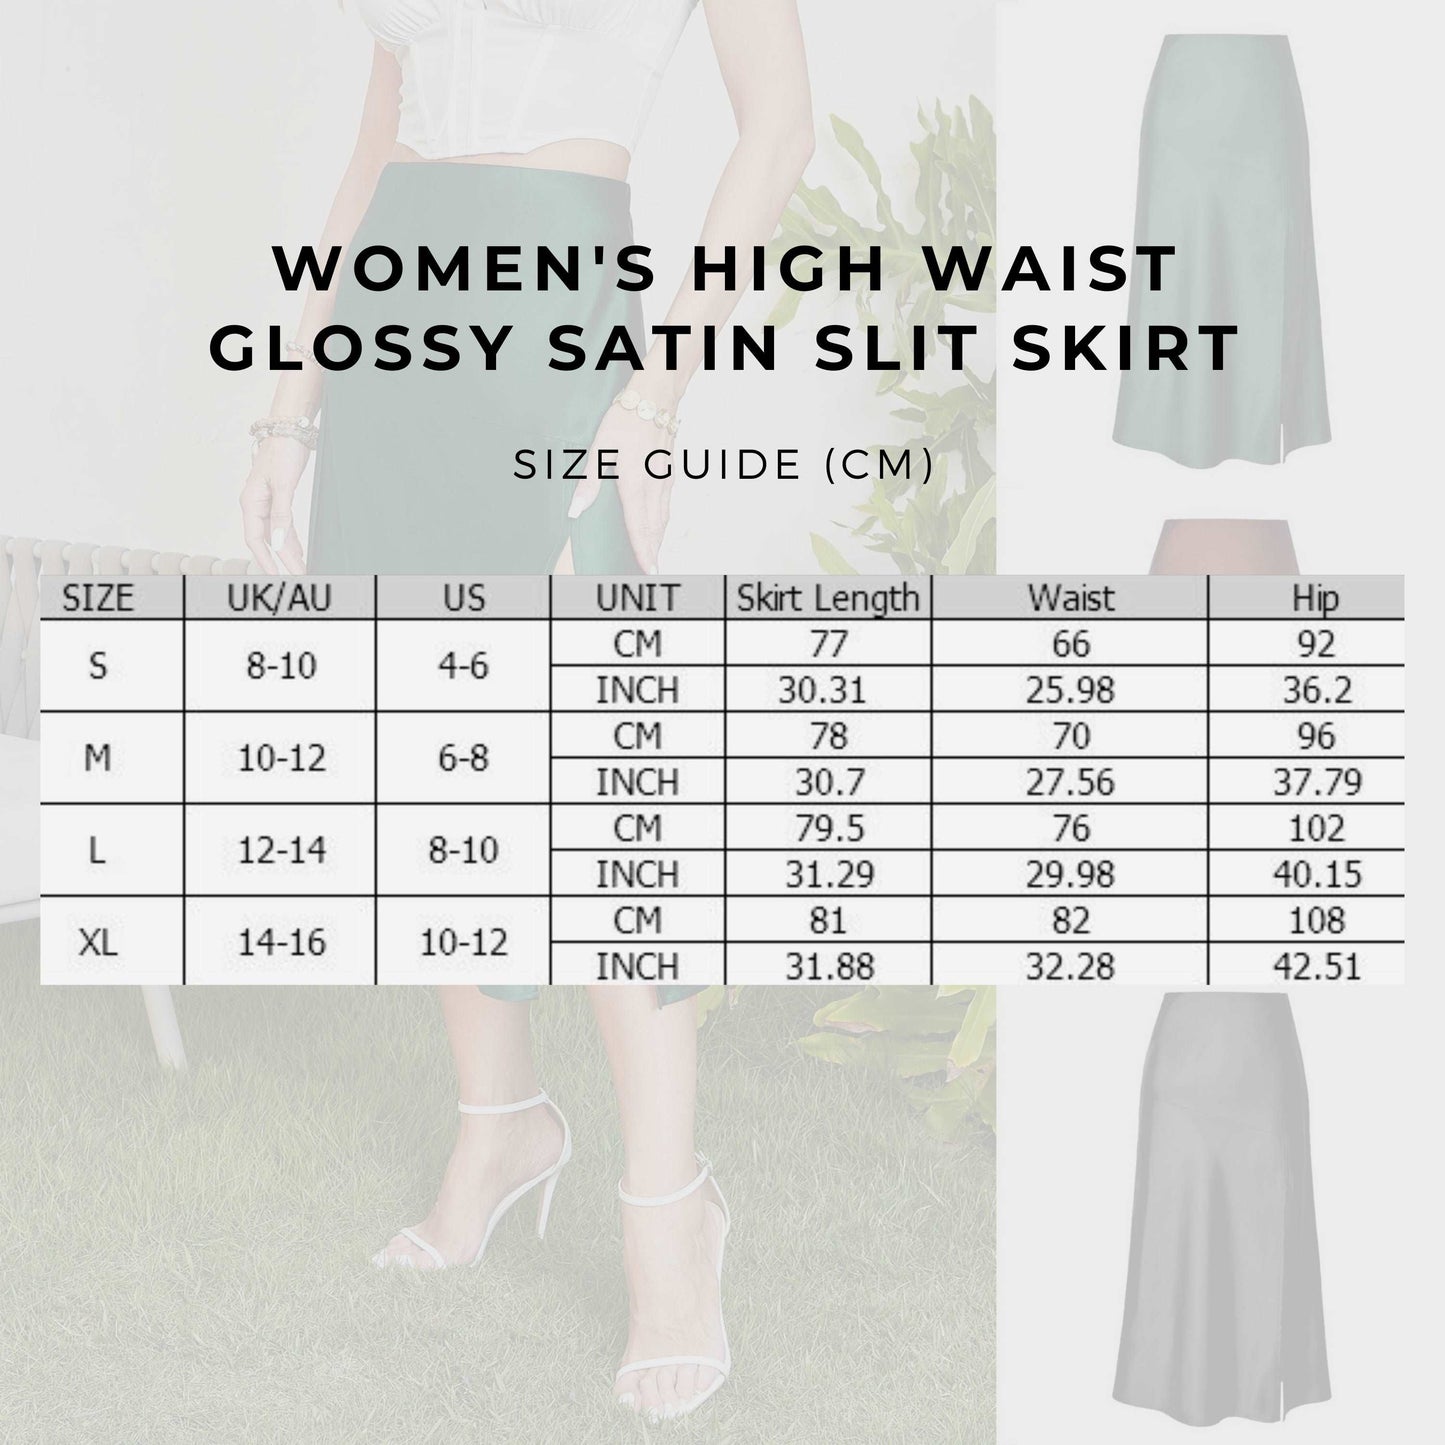 Women's High Waist Glossy Satin Slit Skirt